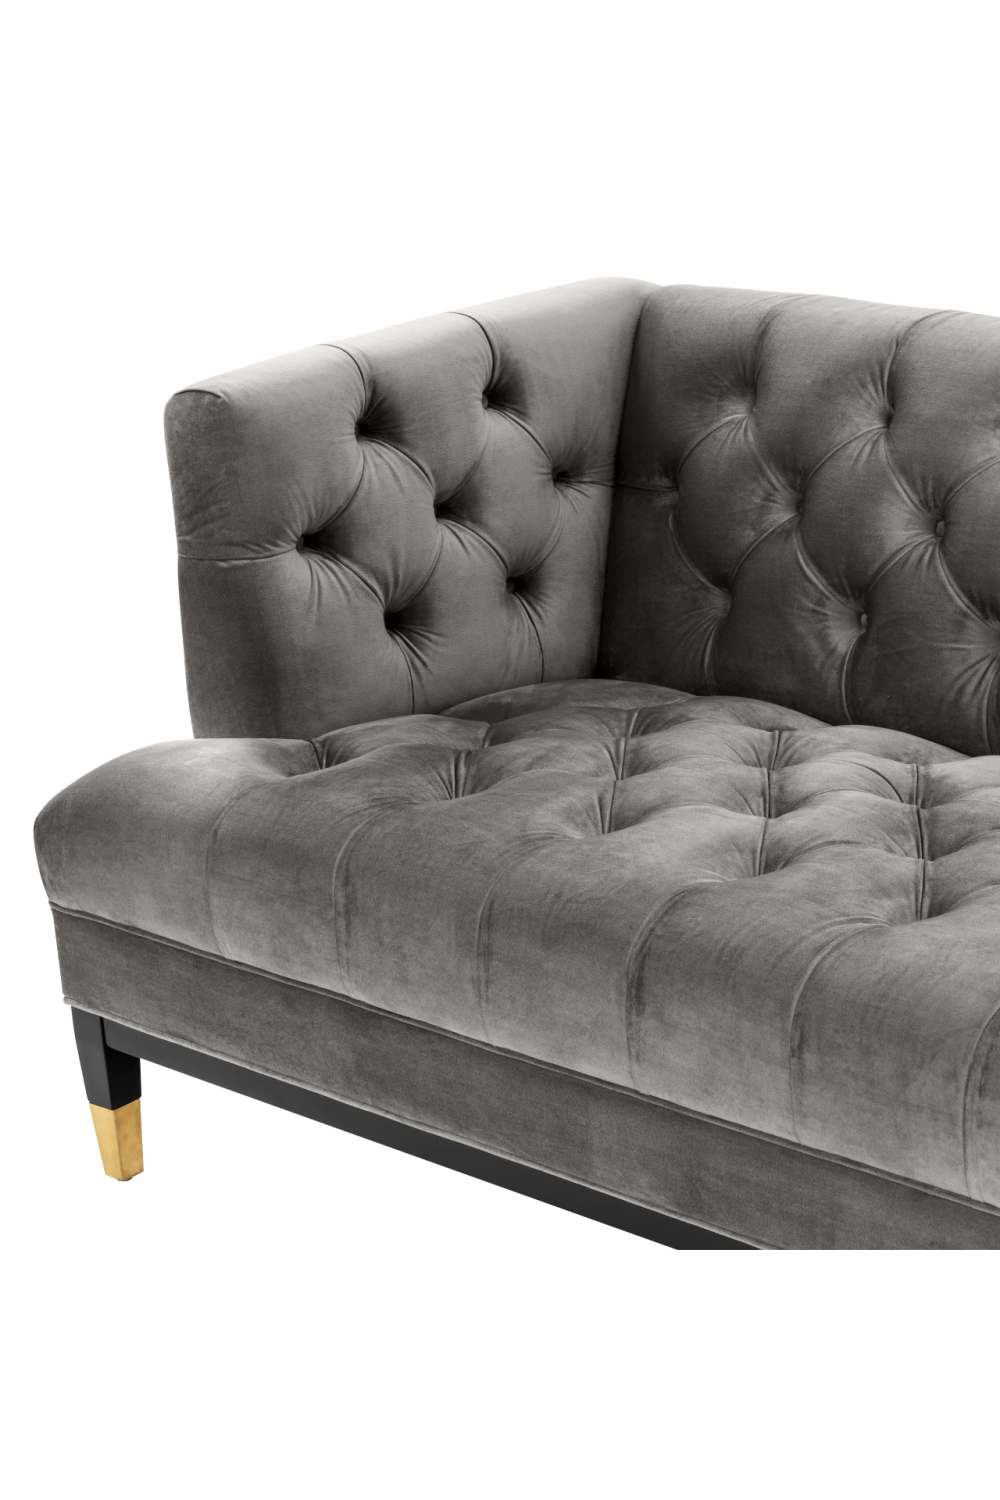 Gray Velvet Modern Chesterfield Sofa | Eichholtz Castelle | Oroa.com